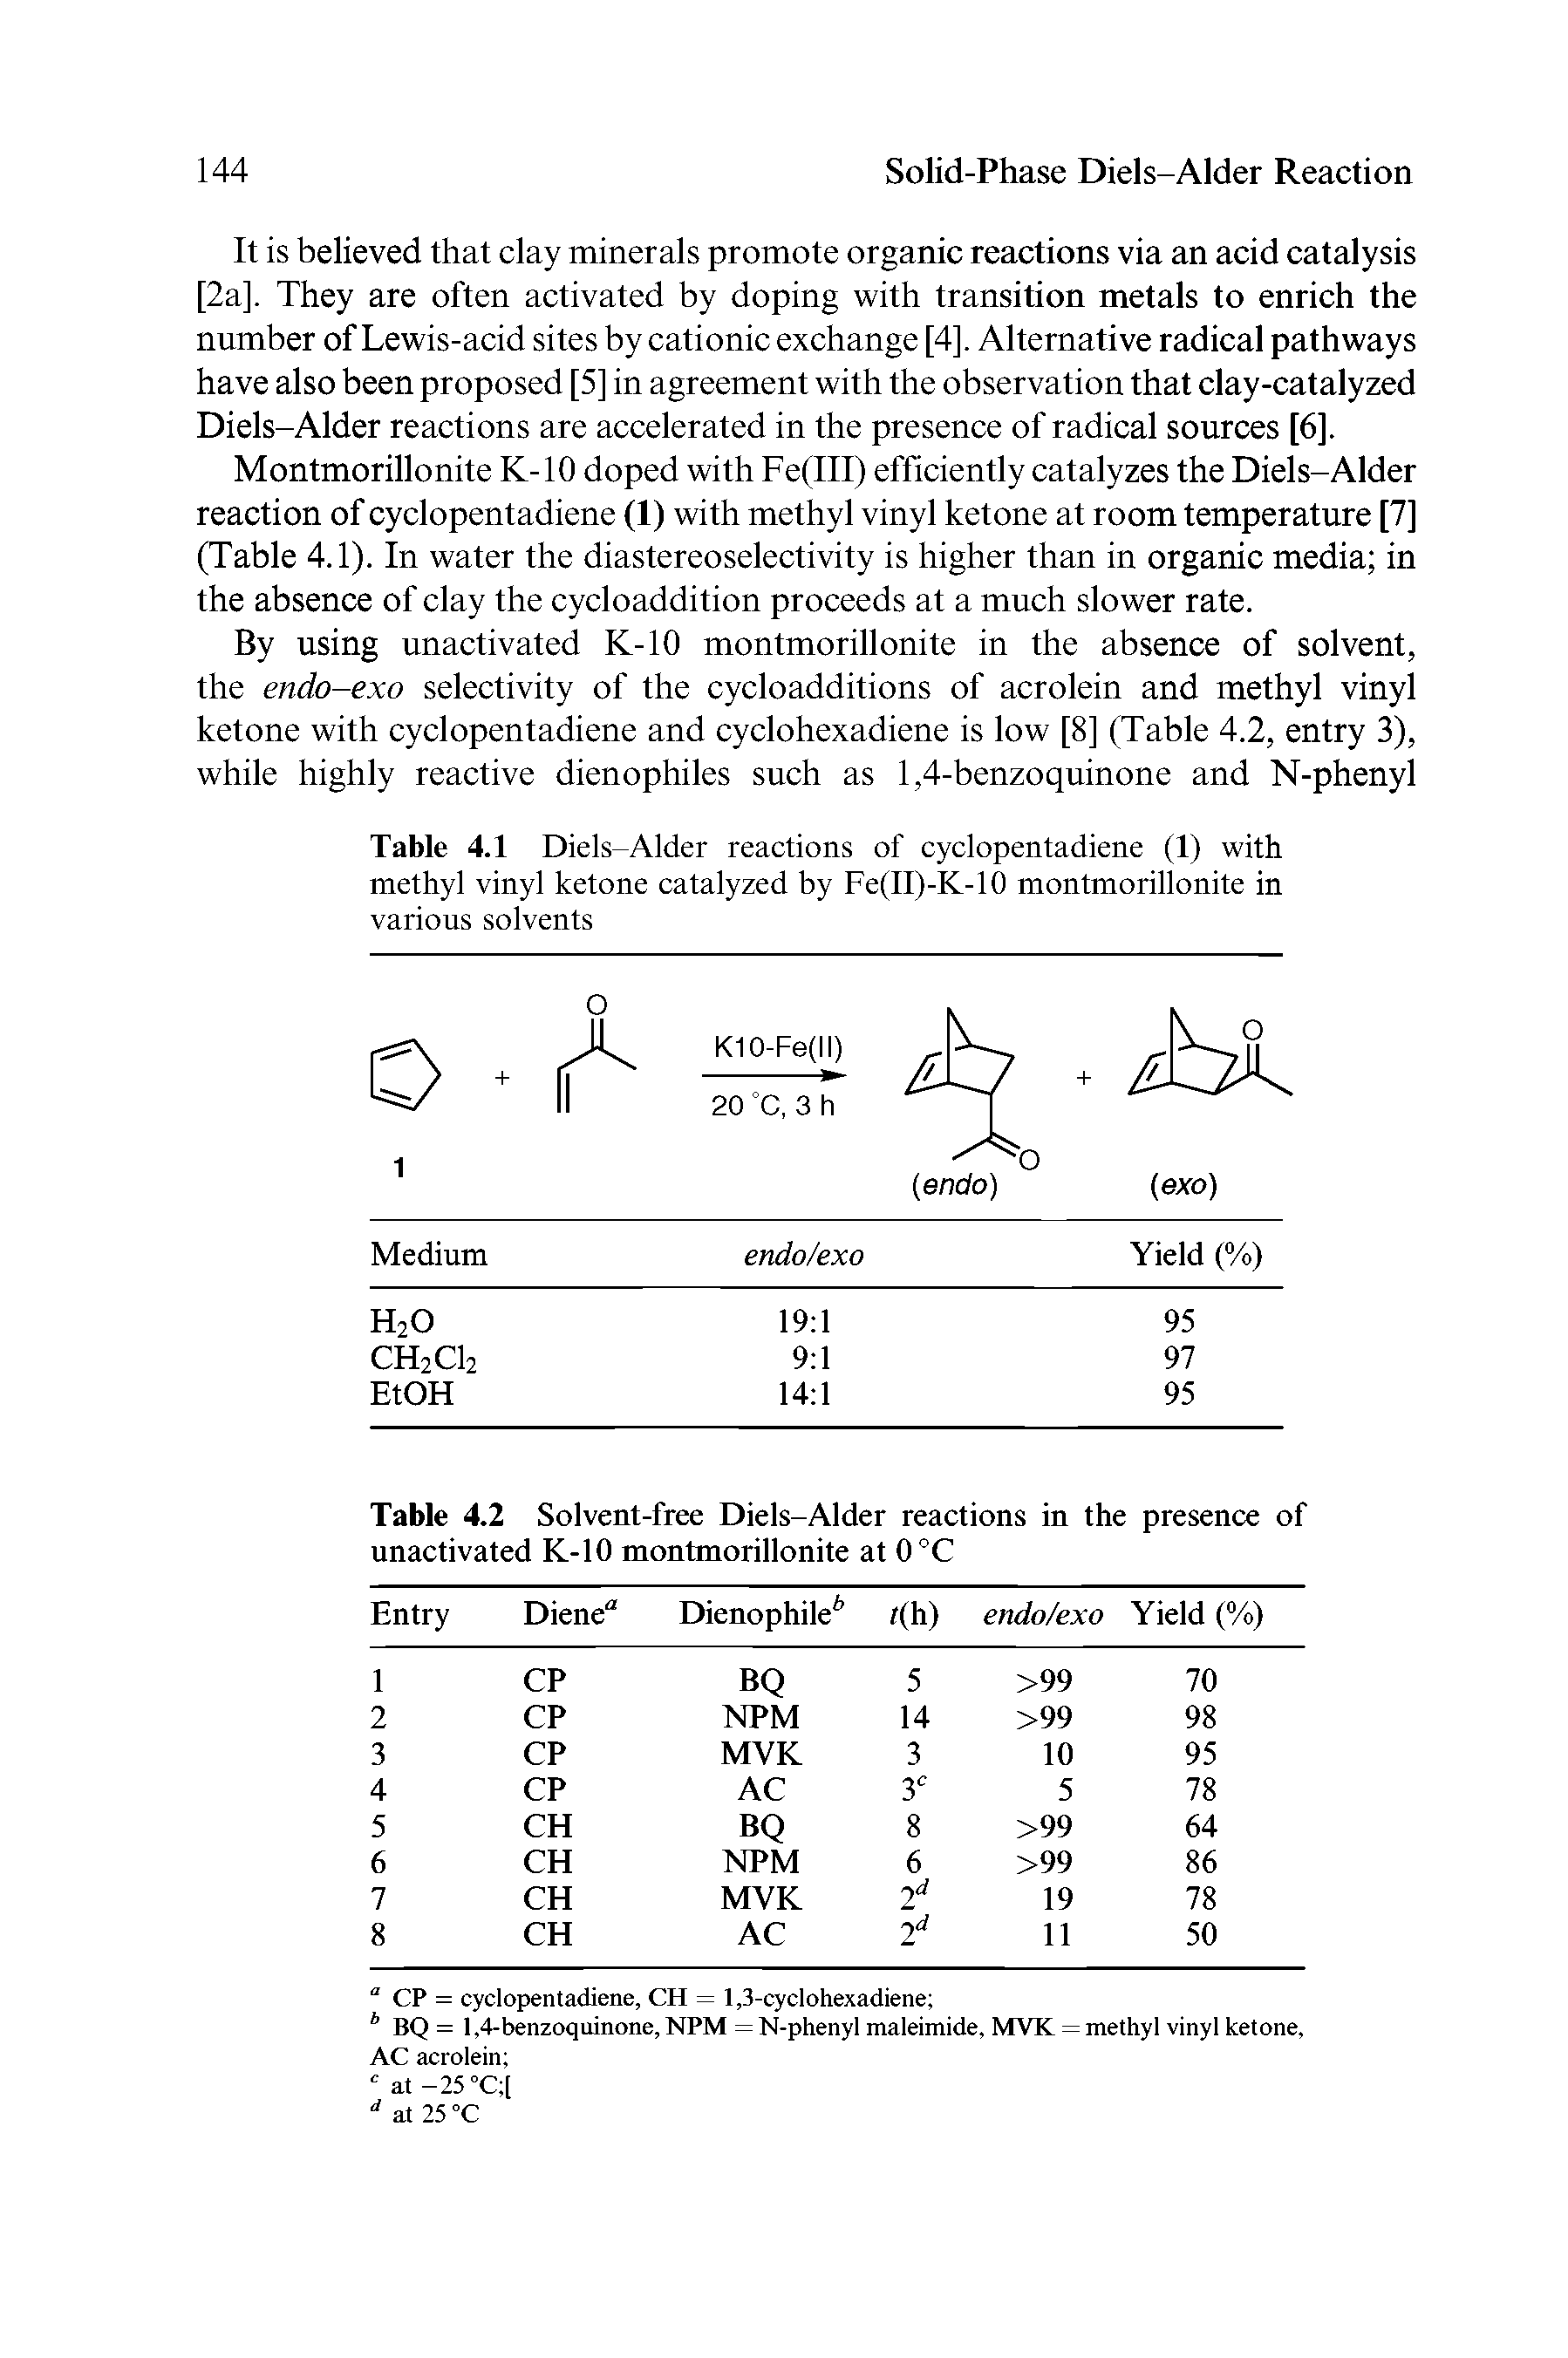 Table 4.1 Diels-Alder reactions of cyclopentadiene (1) with methyl vinyl ketone catalyzed by Fe(II)-K-10 montmorillonite in various solvents...